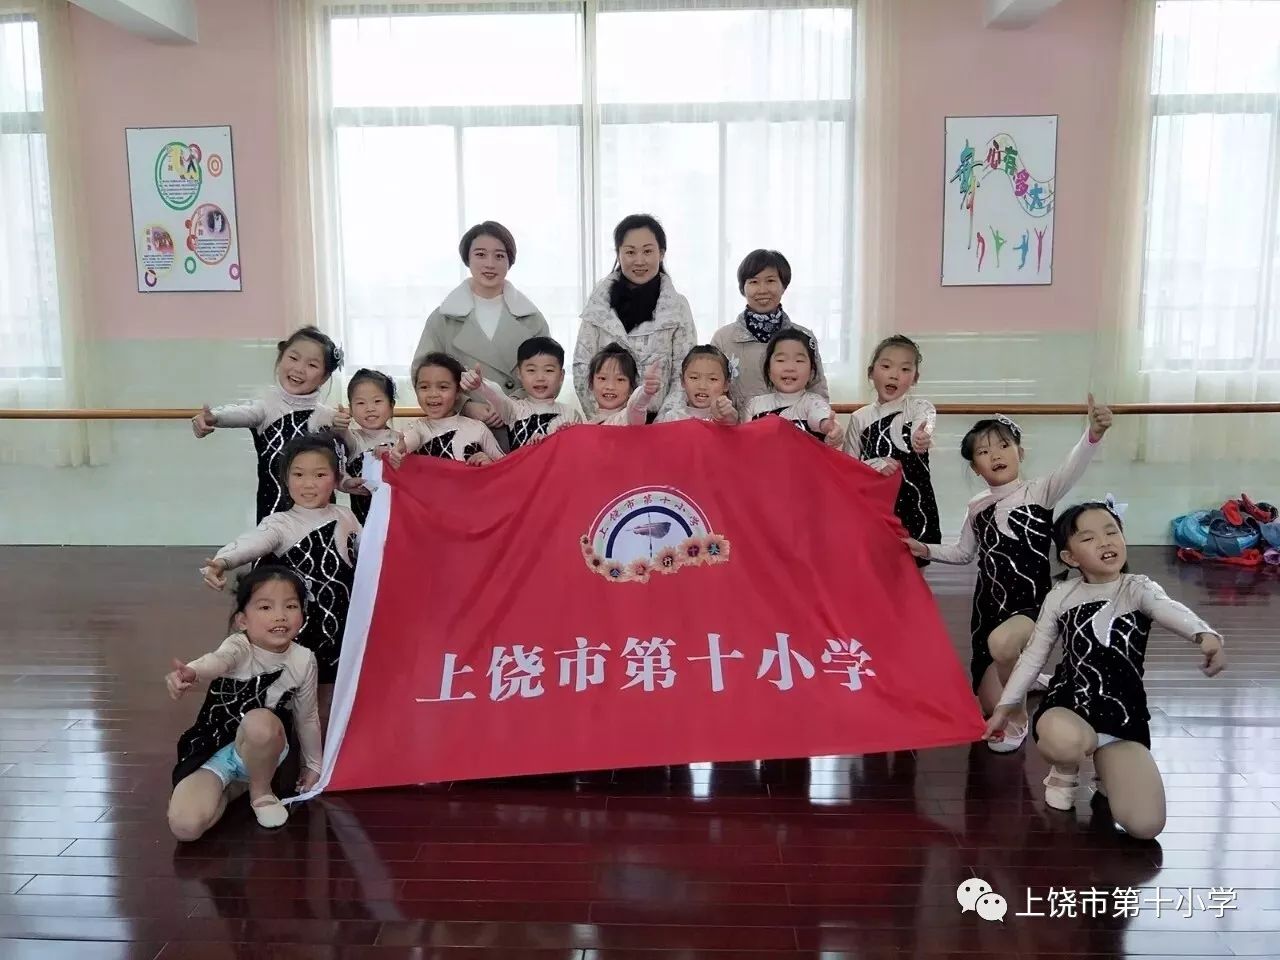 上饶市第十小学啦啦操队喜获江西省校园啦啦操比赛冠军!